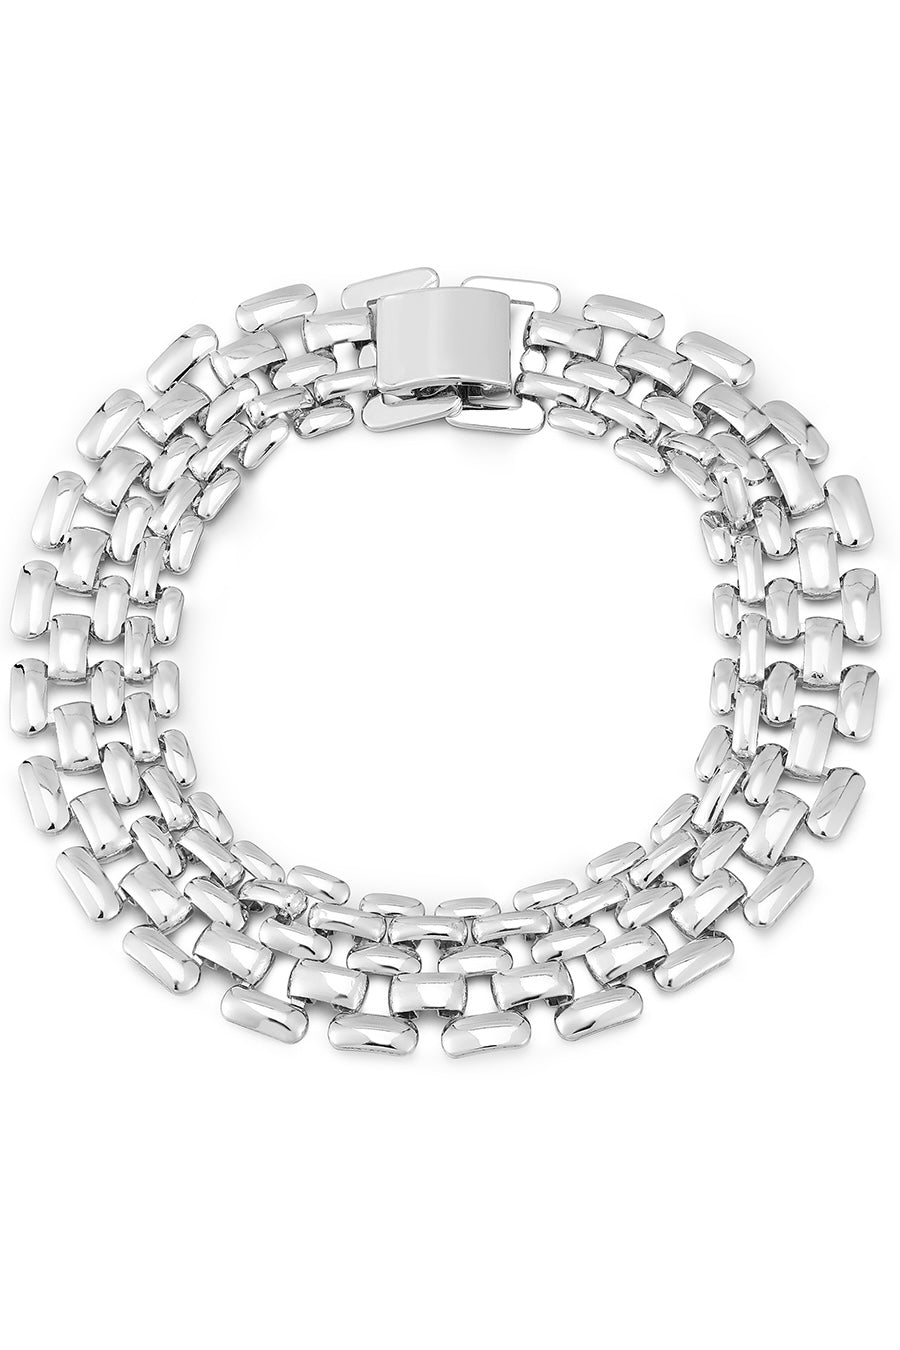 LUV AJ Celine Chain Link Bracelet